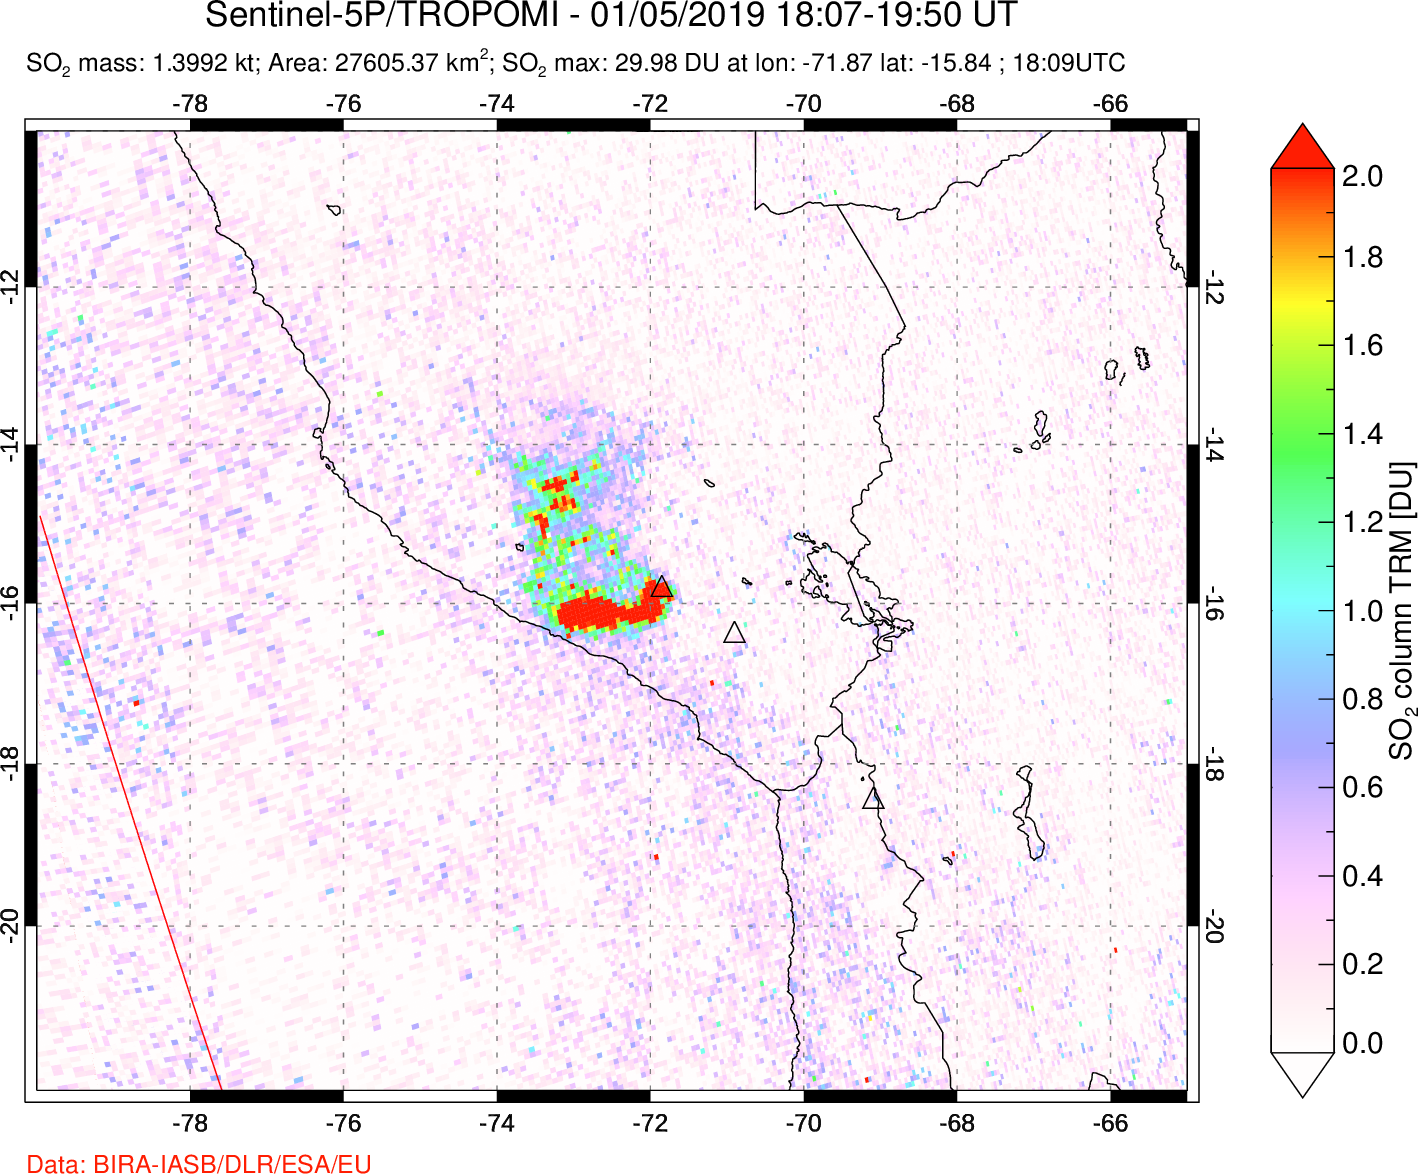 A sulfur dioxide image over Peru on Jan 05, 2019.